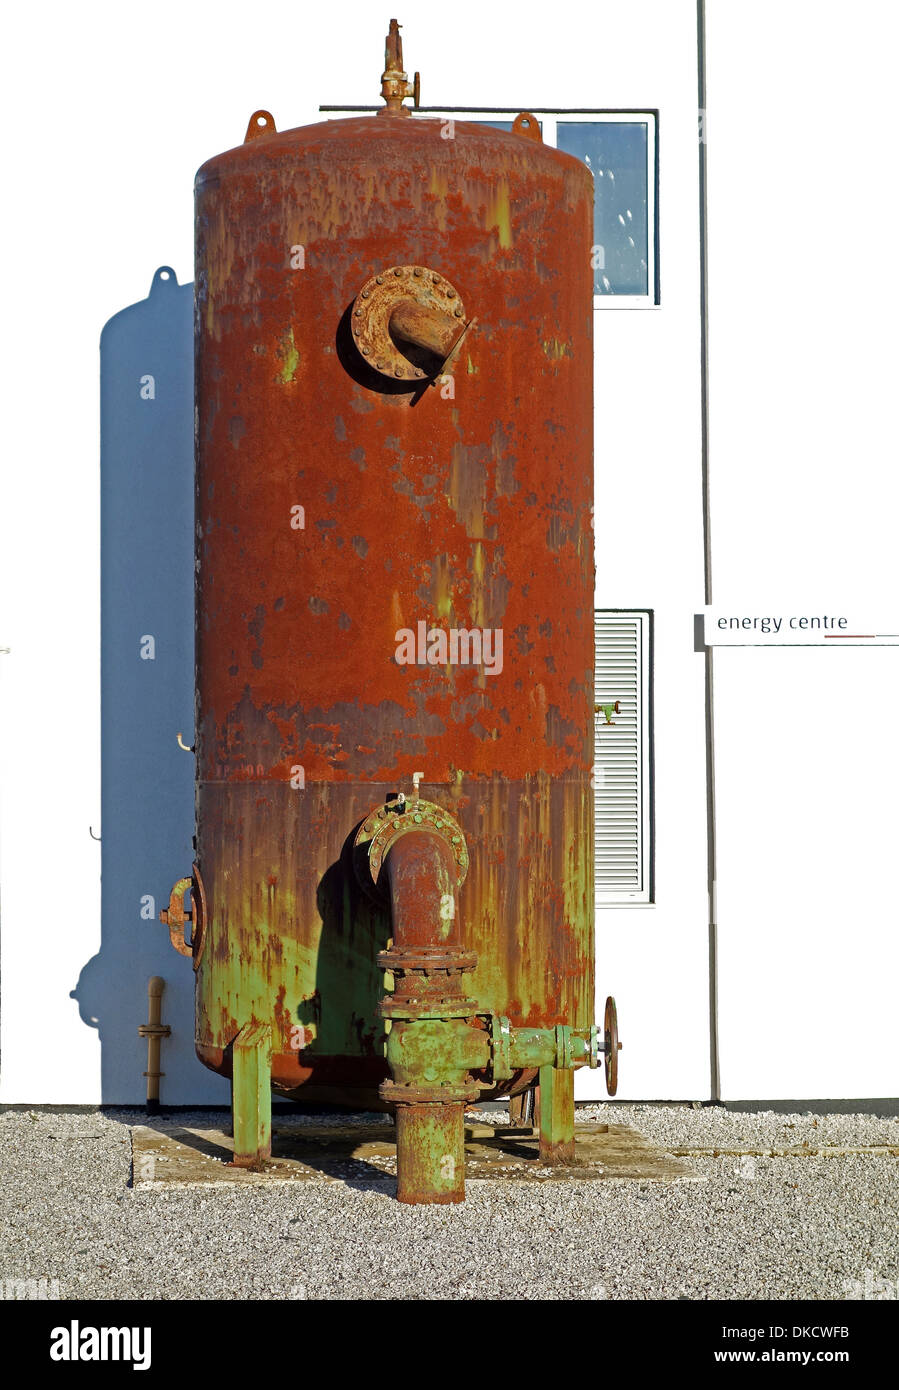 Eine alte industrielle Warmwasserspeicher Stockfotografie - Alamy